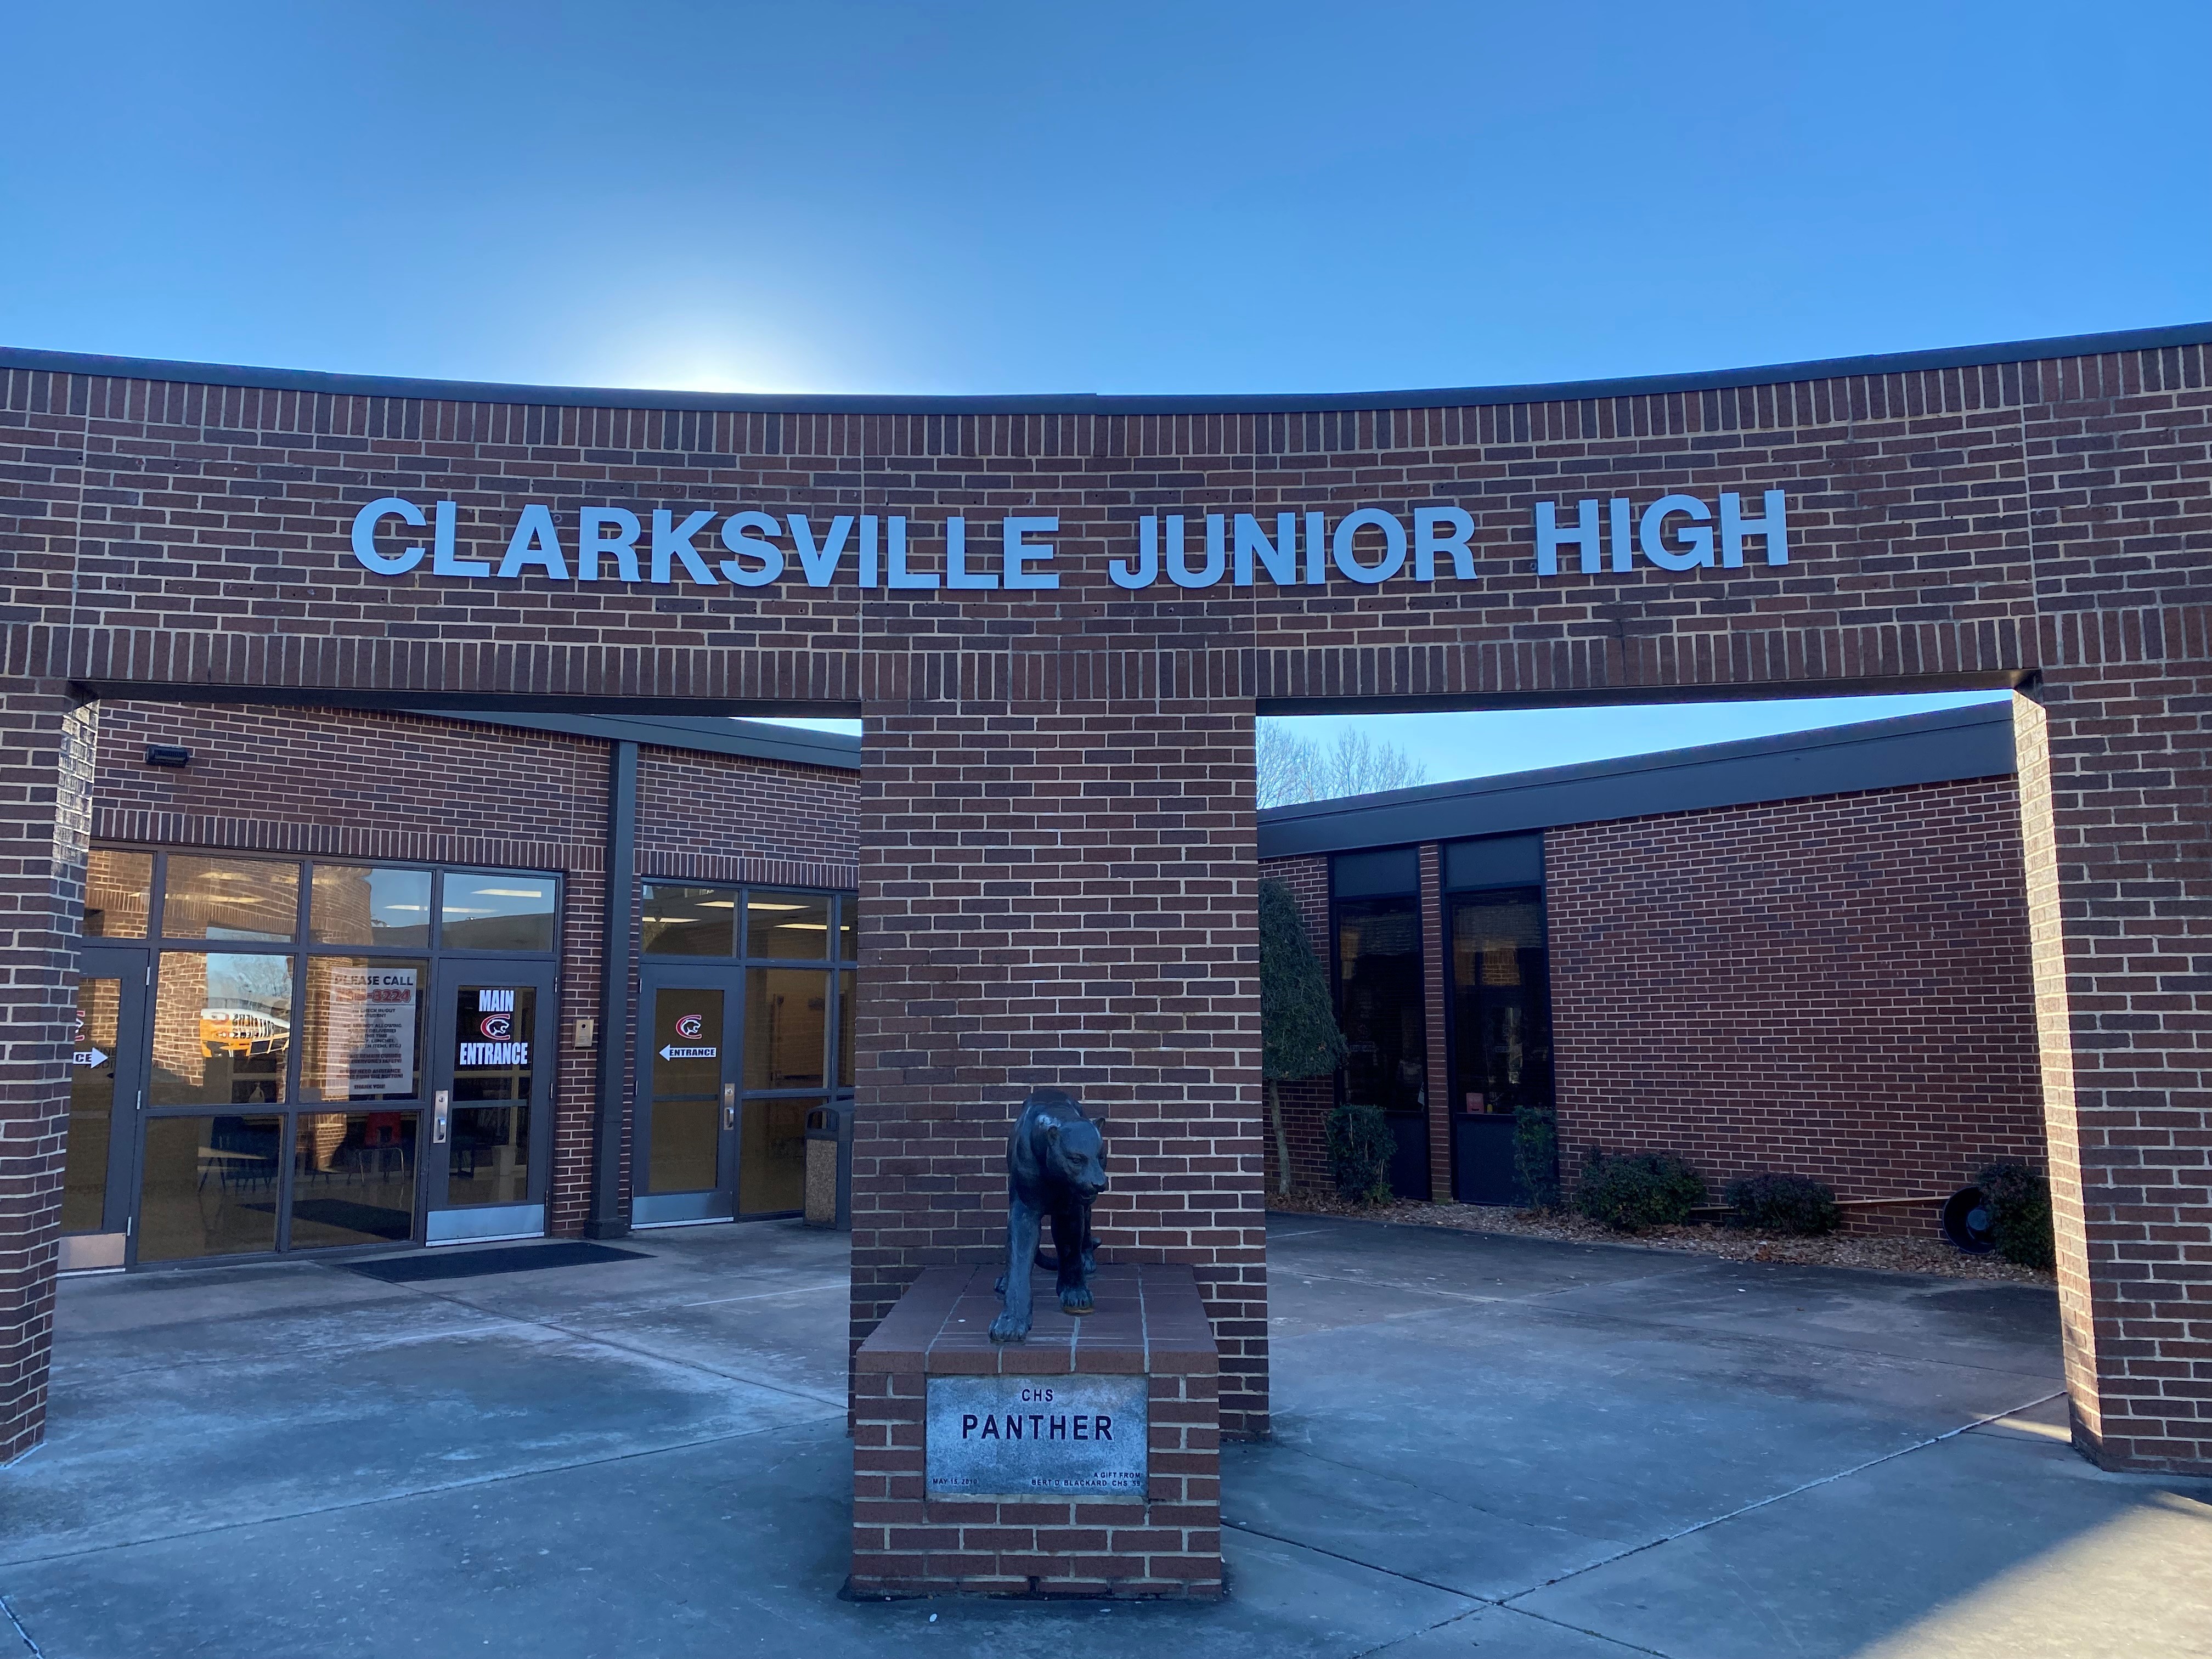 Clarksville Junior High